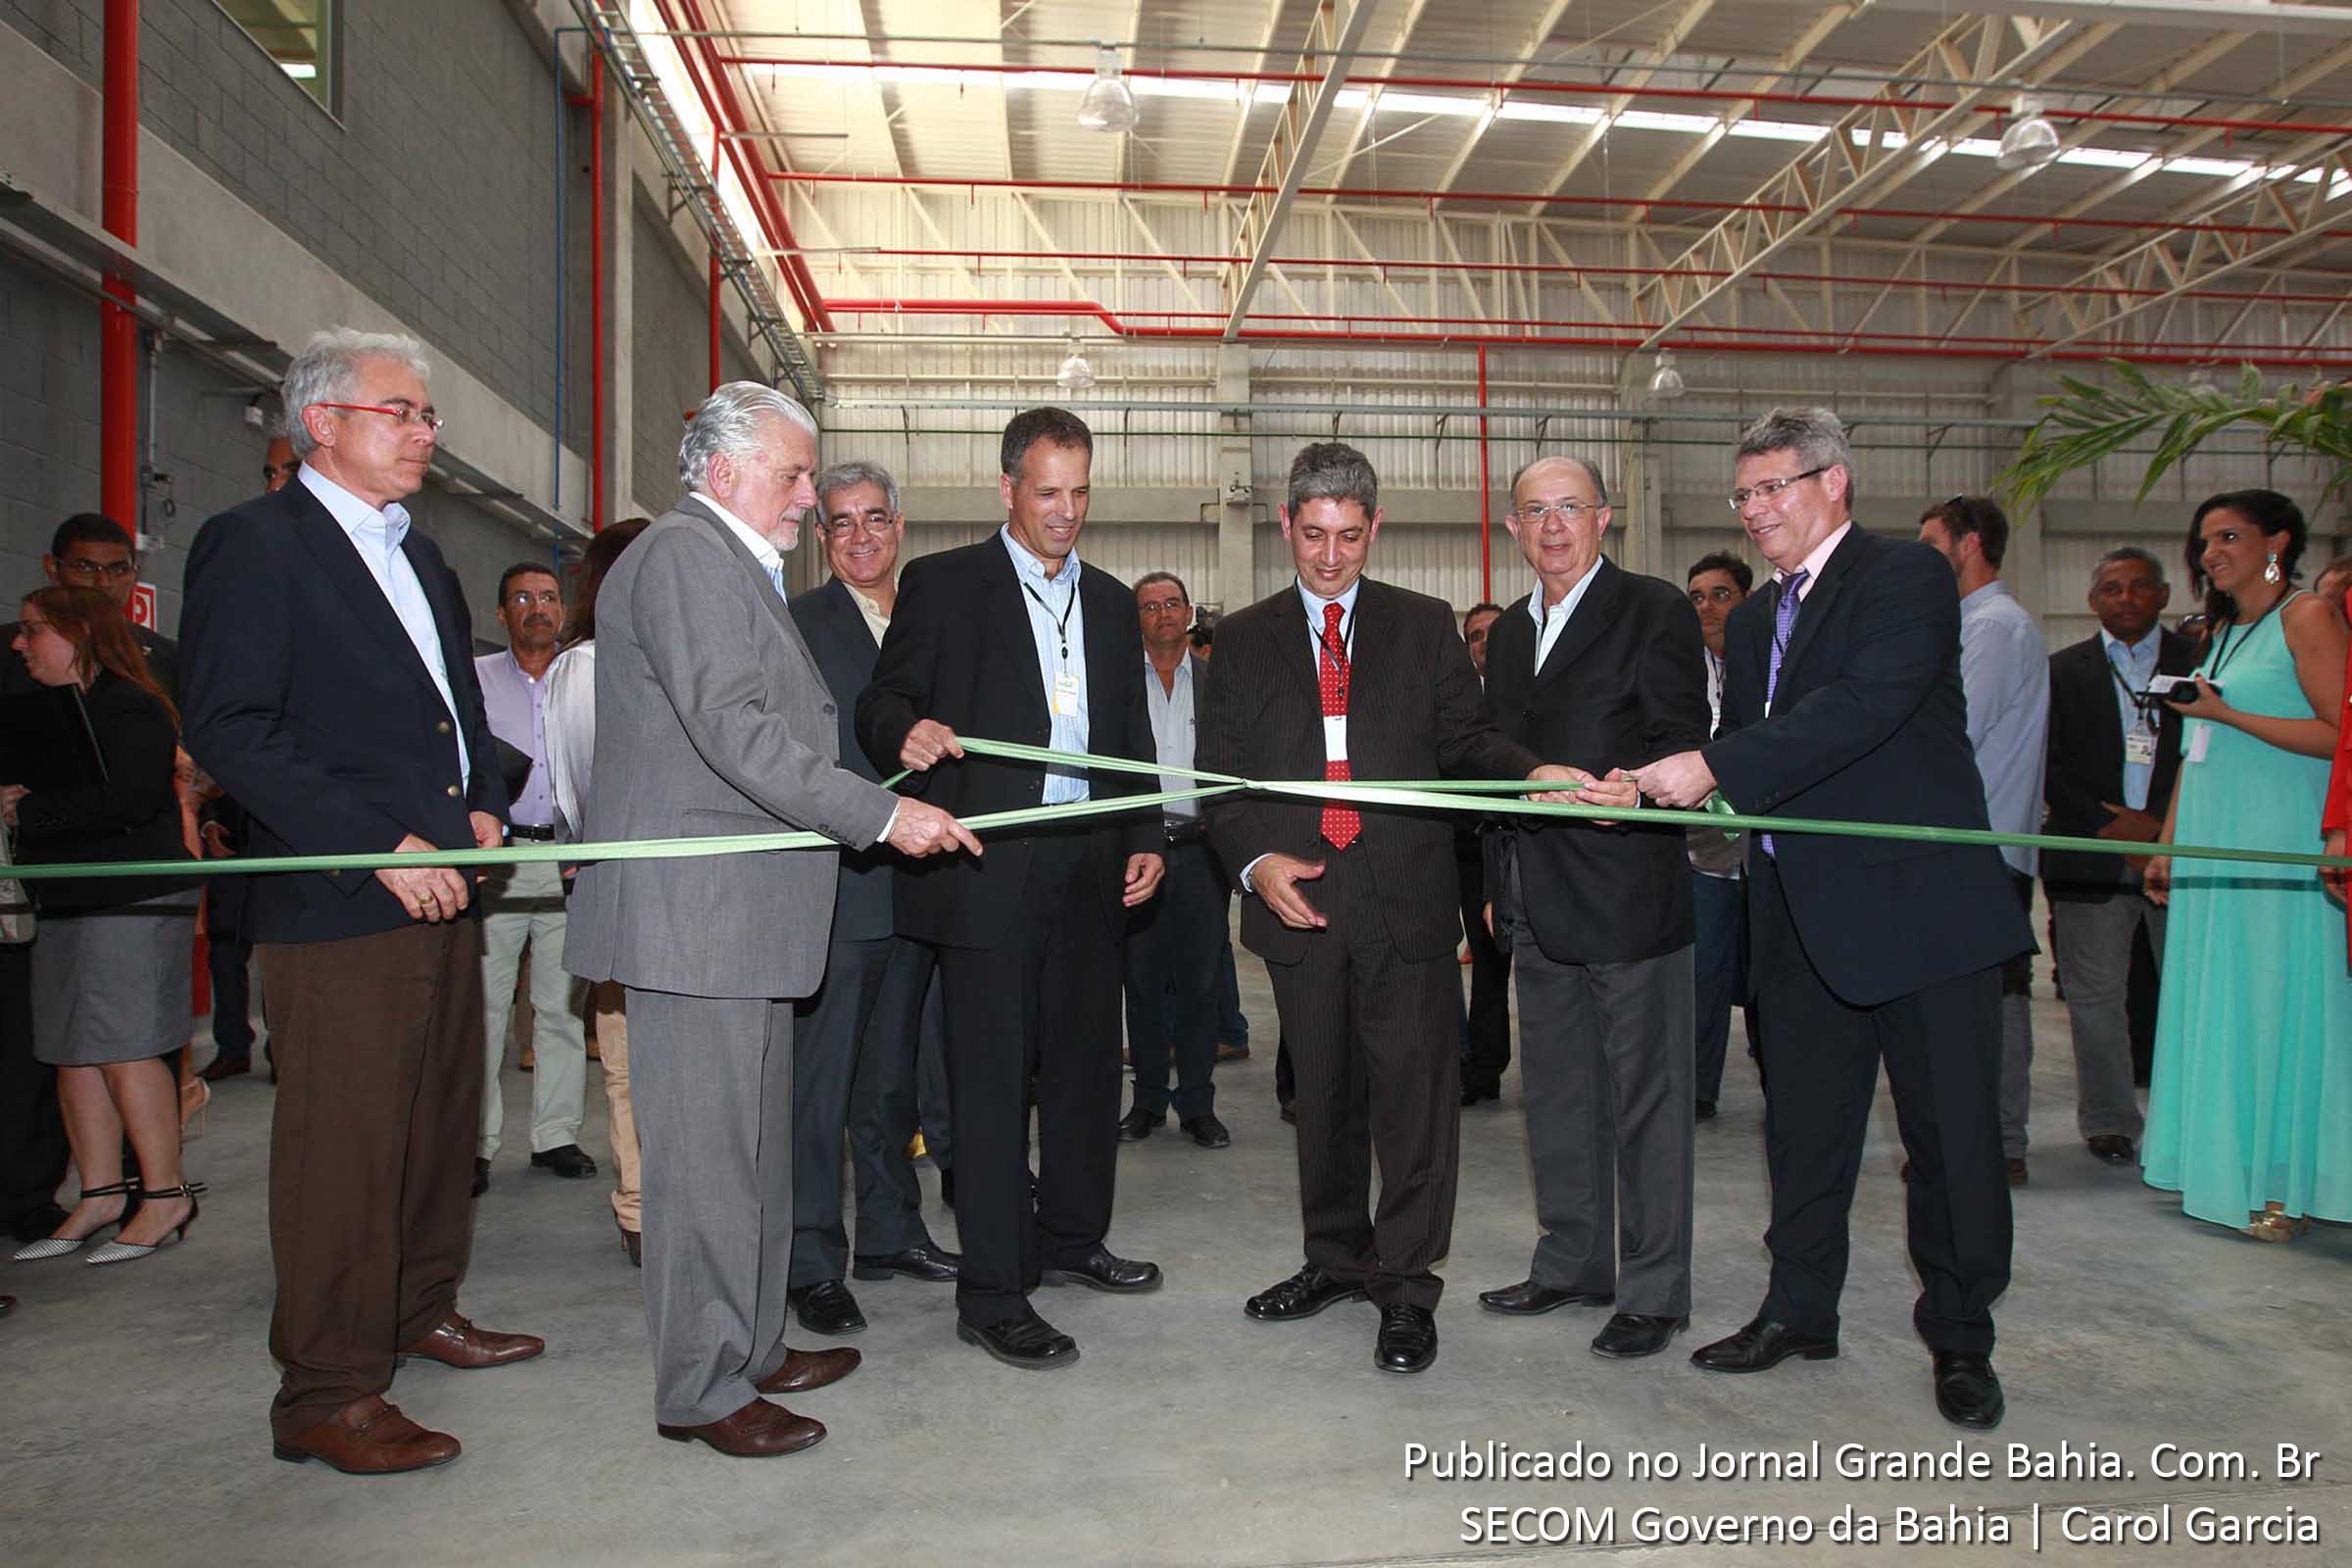 Governador Jaques Wagner inaugura unidade industrial da Tama Brasil em Feira de Santana.